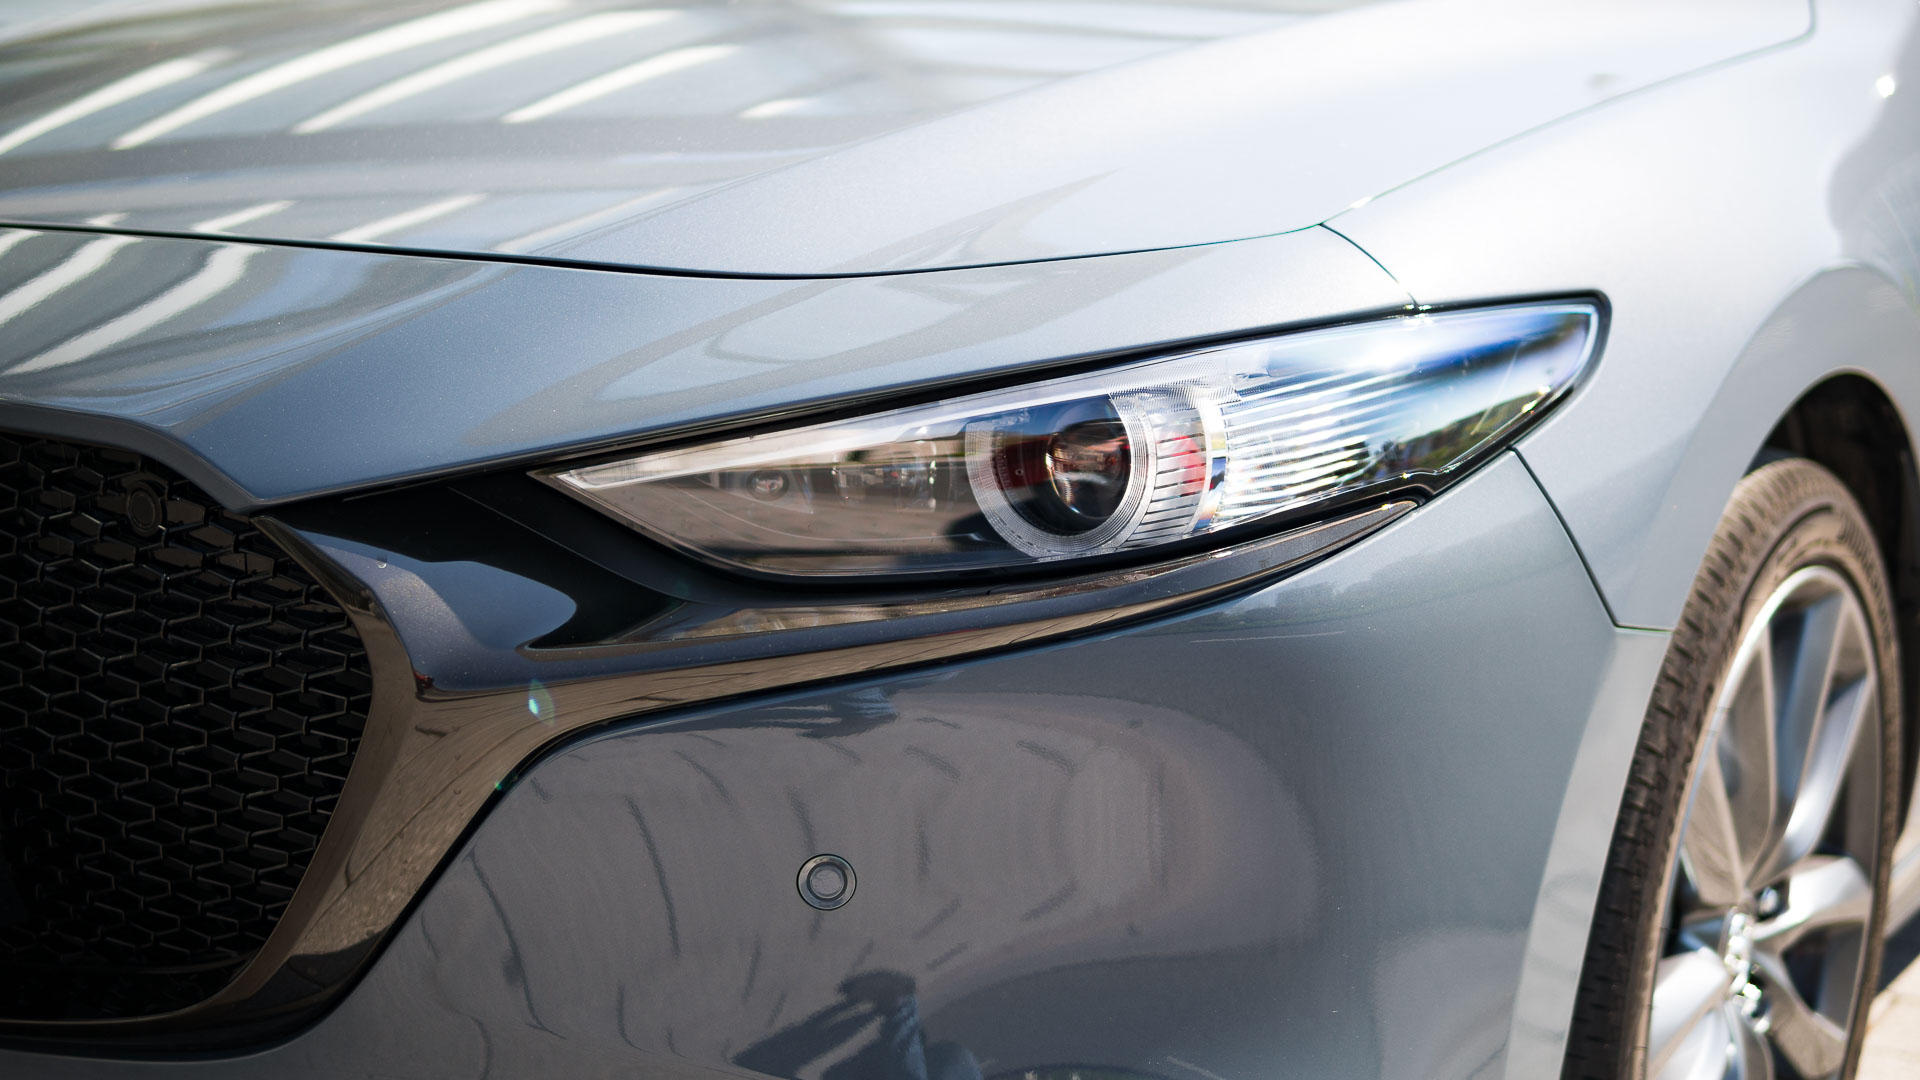 Darf’s ein bisschen mehr sein? – der neue Mazda 3 1.8 Skyactiv-D im Test